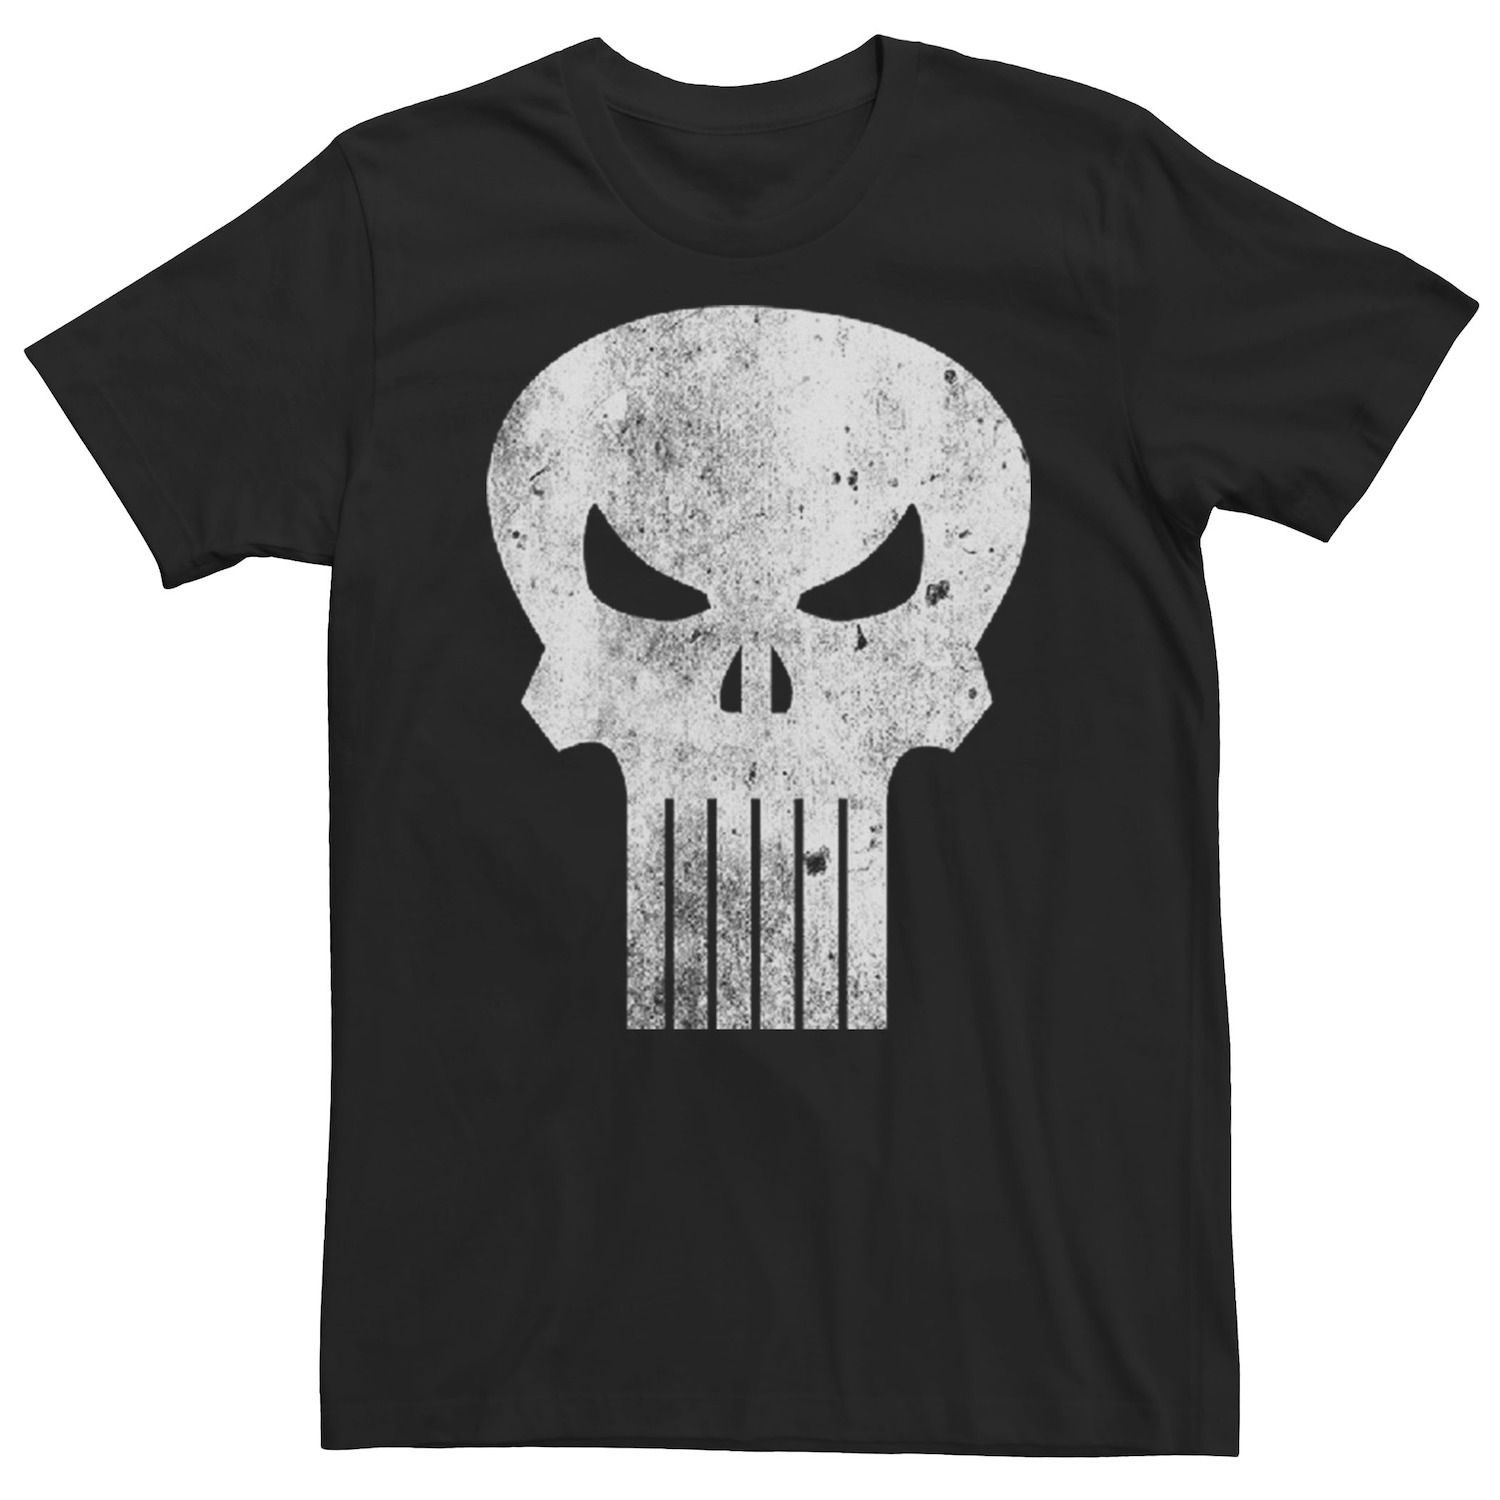 Мужская классическая футболка с логотипом The Punisher Marvel футболка мужская marvel punisher s